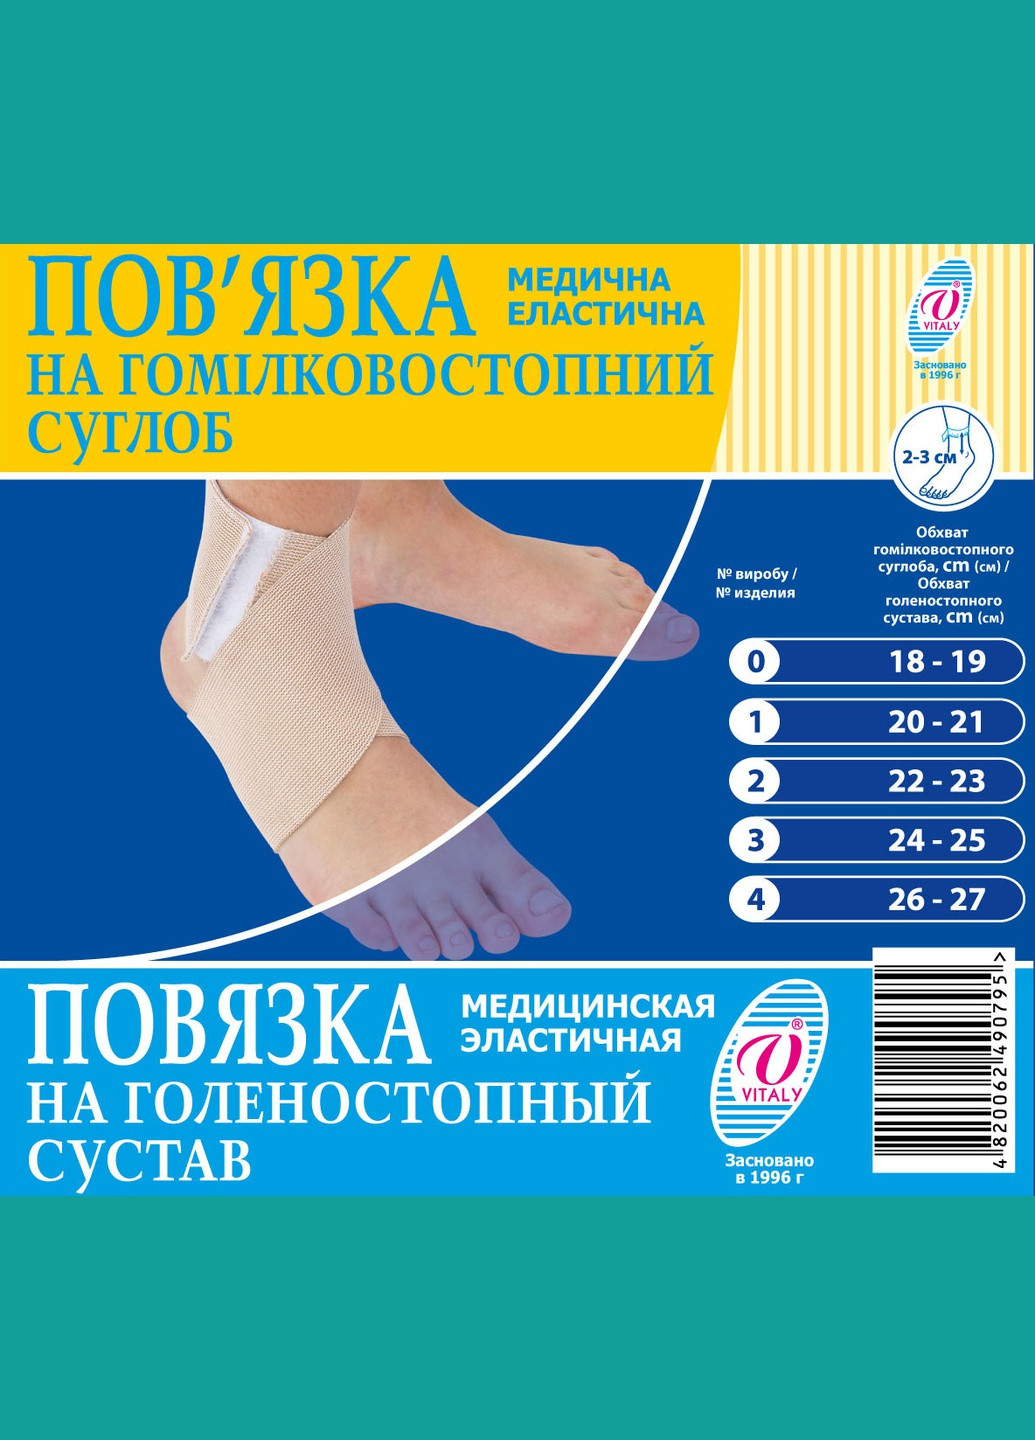 Бандаж на голеностопный сустав, повязка медицинская эластичная фиксатор голеностопного сустава ВIТАЛI размер № (2921) Віталі (264208226)